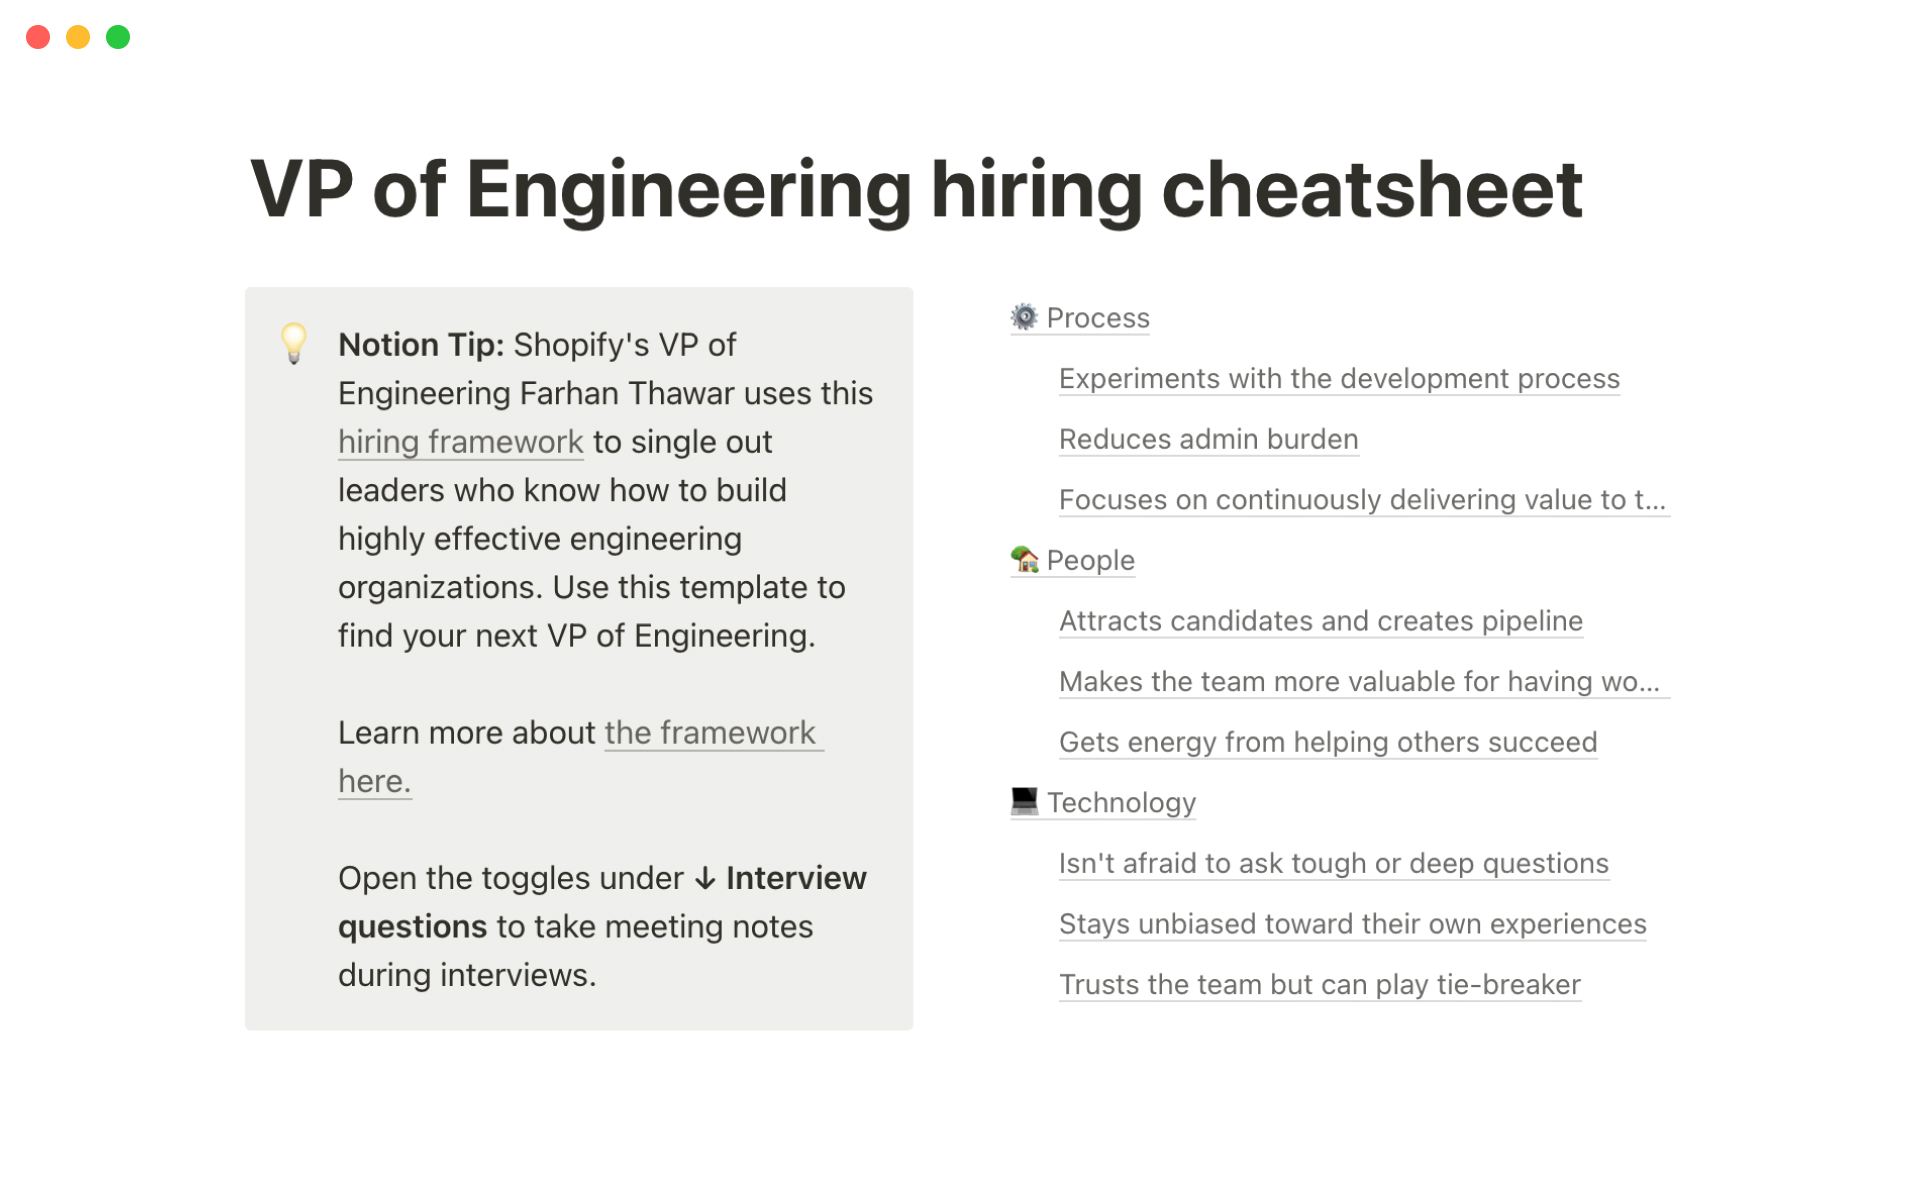 Vista previa de una plantilla para Shopify's VP of Engineering hiring cheatsheet